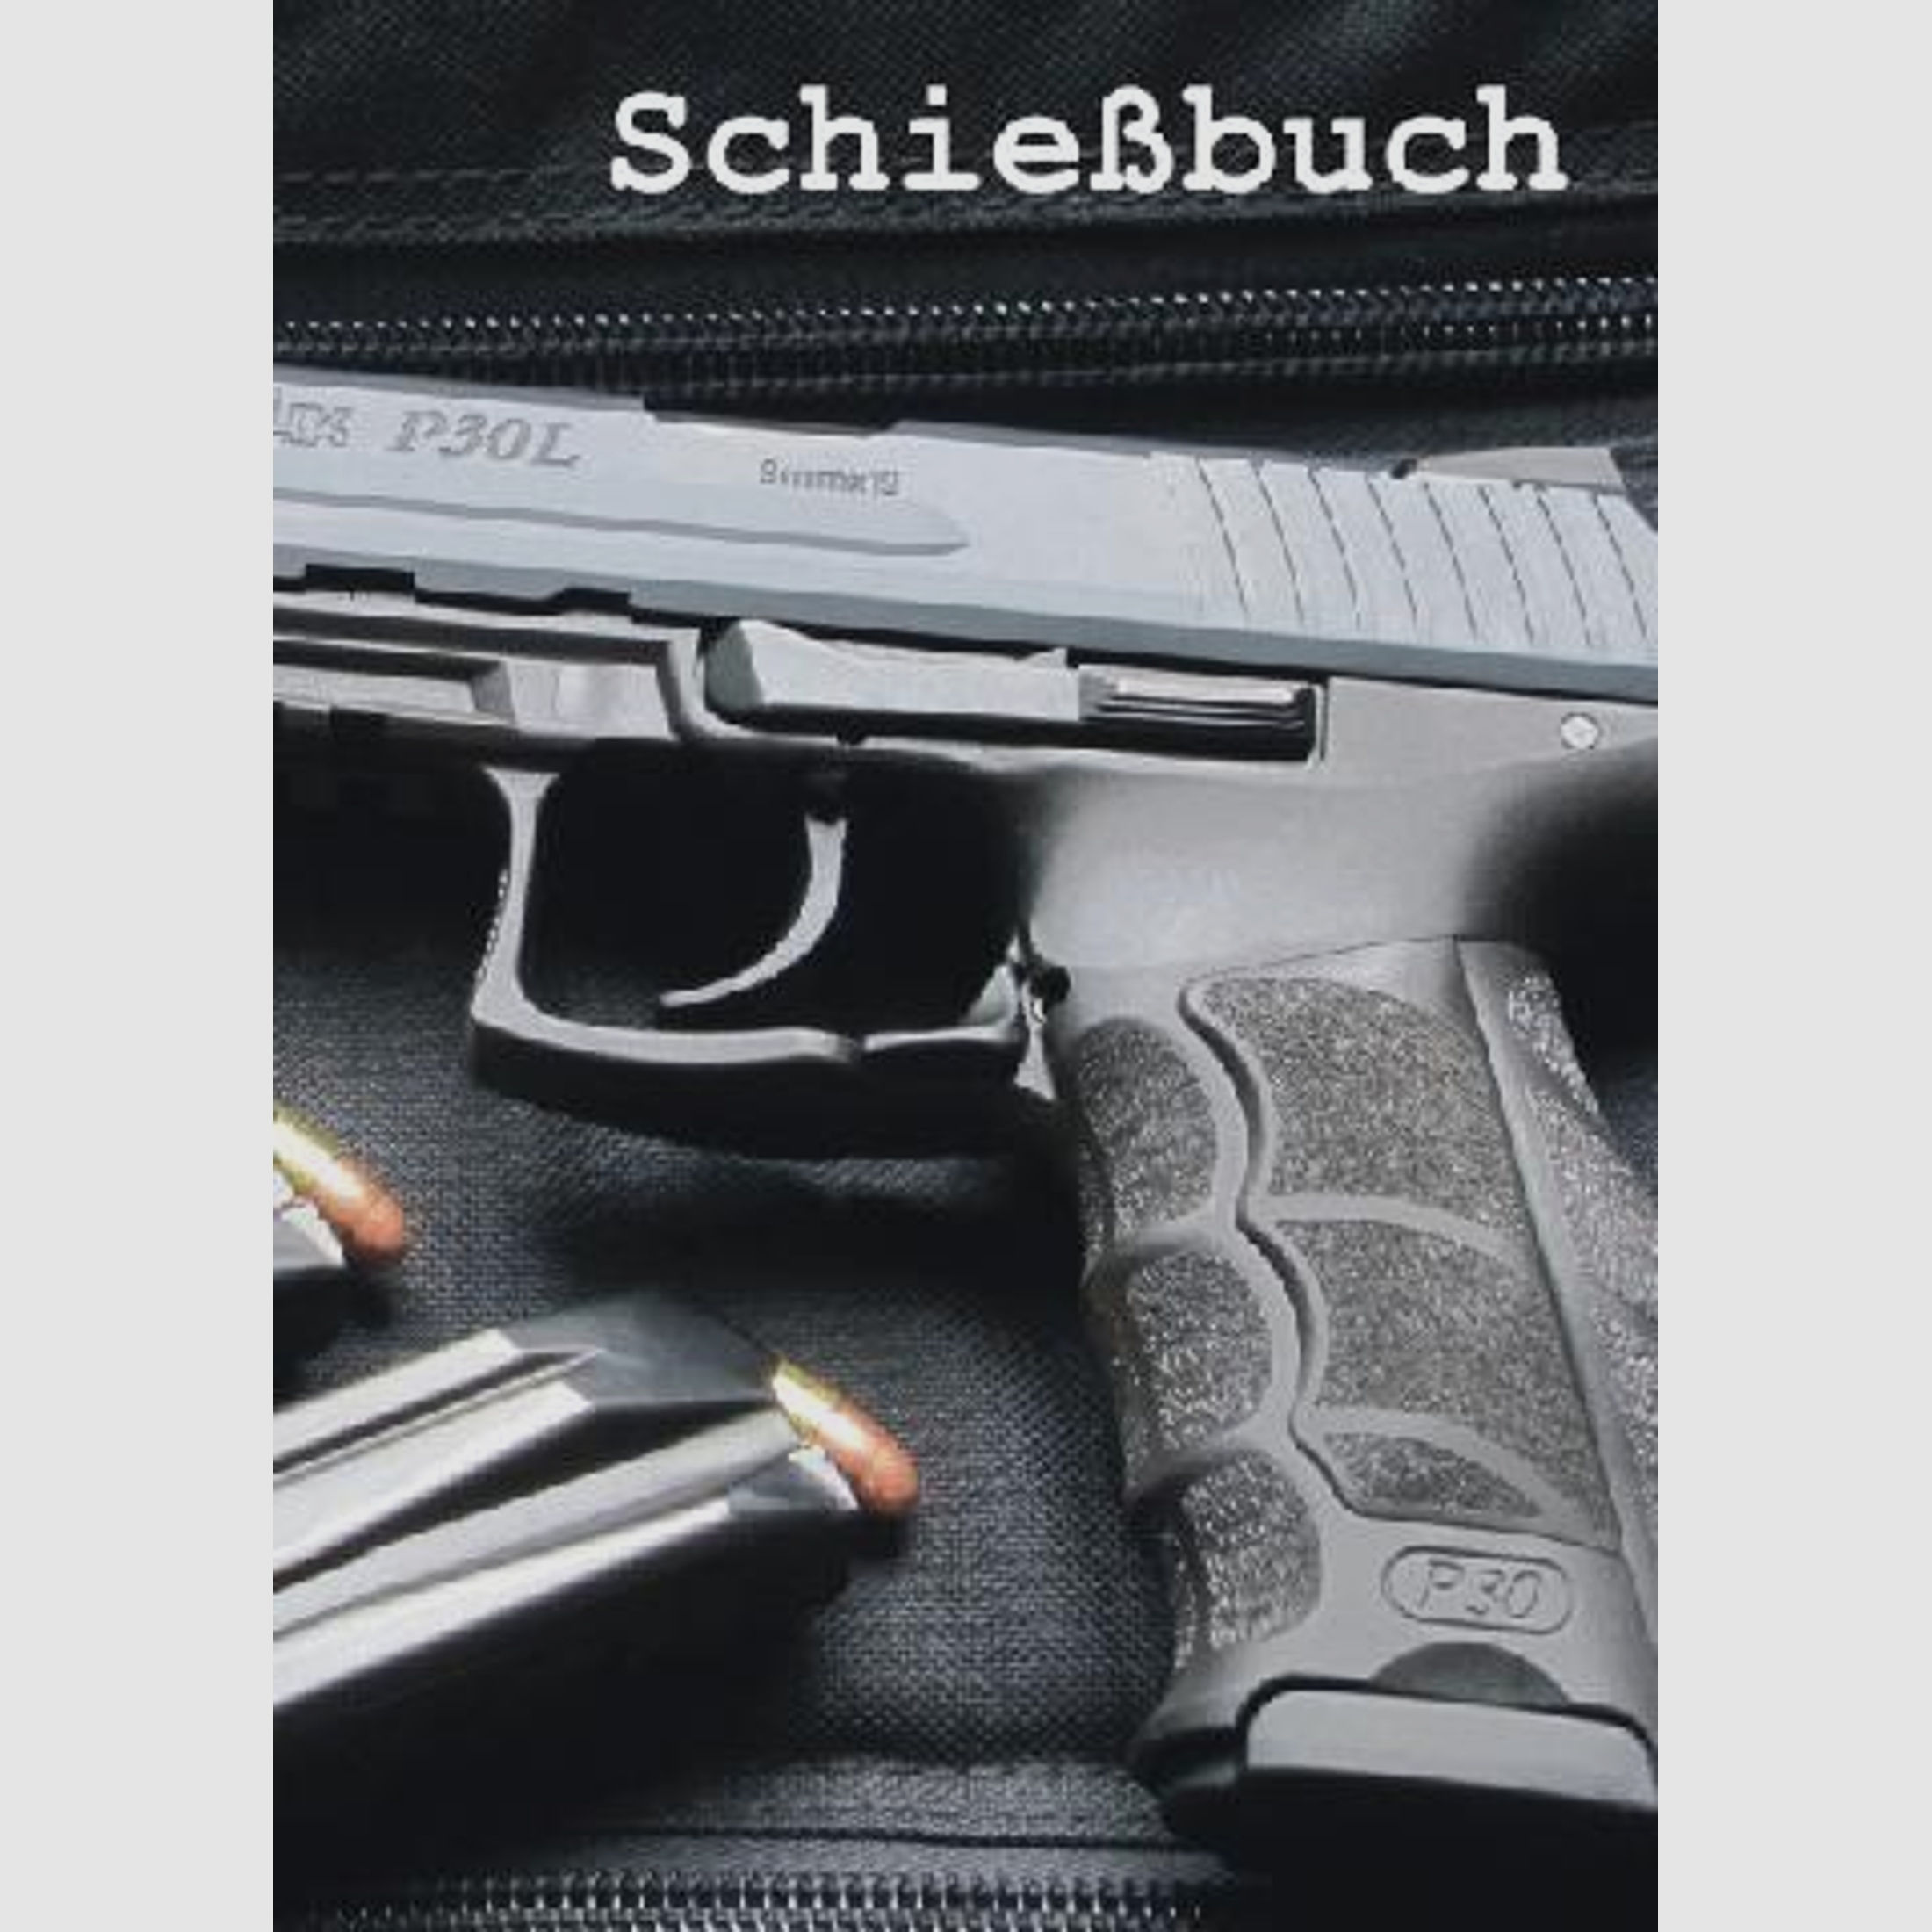 Schießbuch | Schiessbuch für Sportschützen - Motiv Heckler & Koch P30L